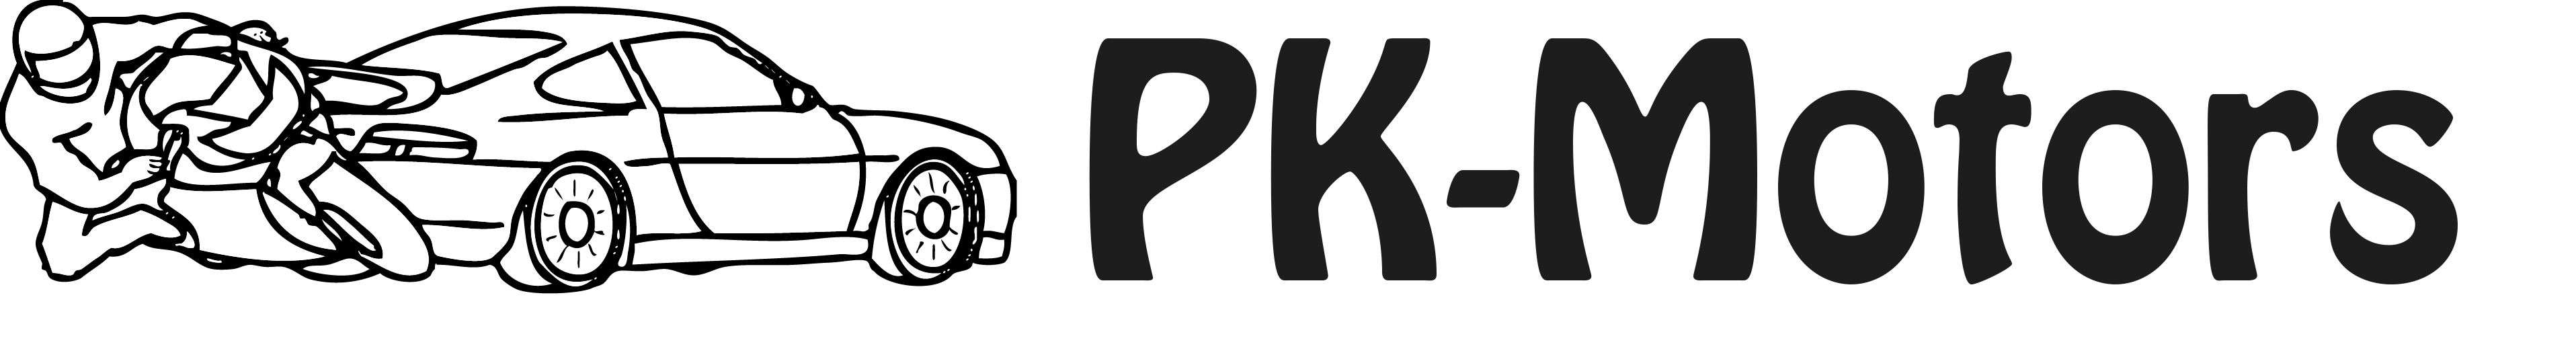 PK-Motors logo